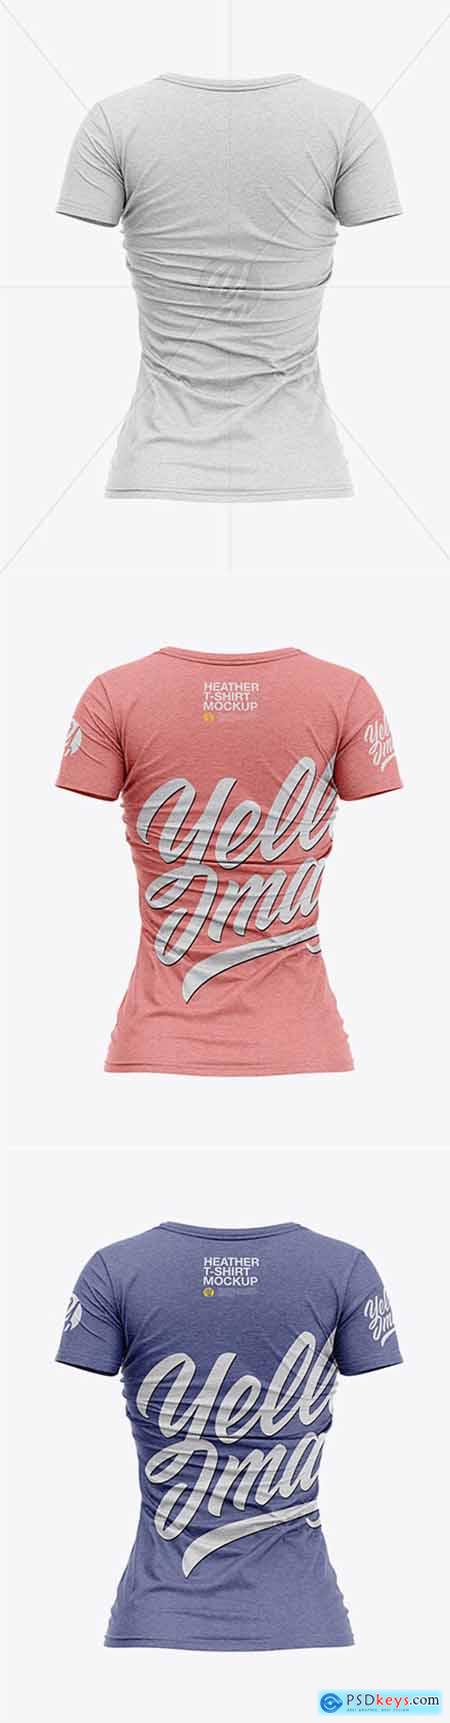 Download Women's Heather Slim-Fit V-Neck T-Shirt Mockup - Back View ...